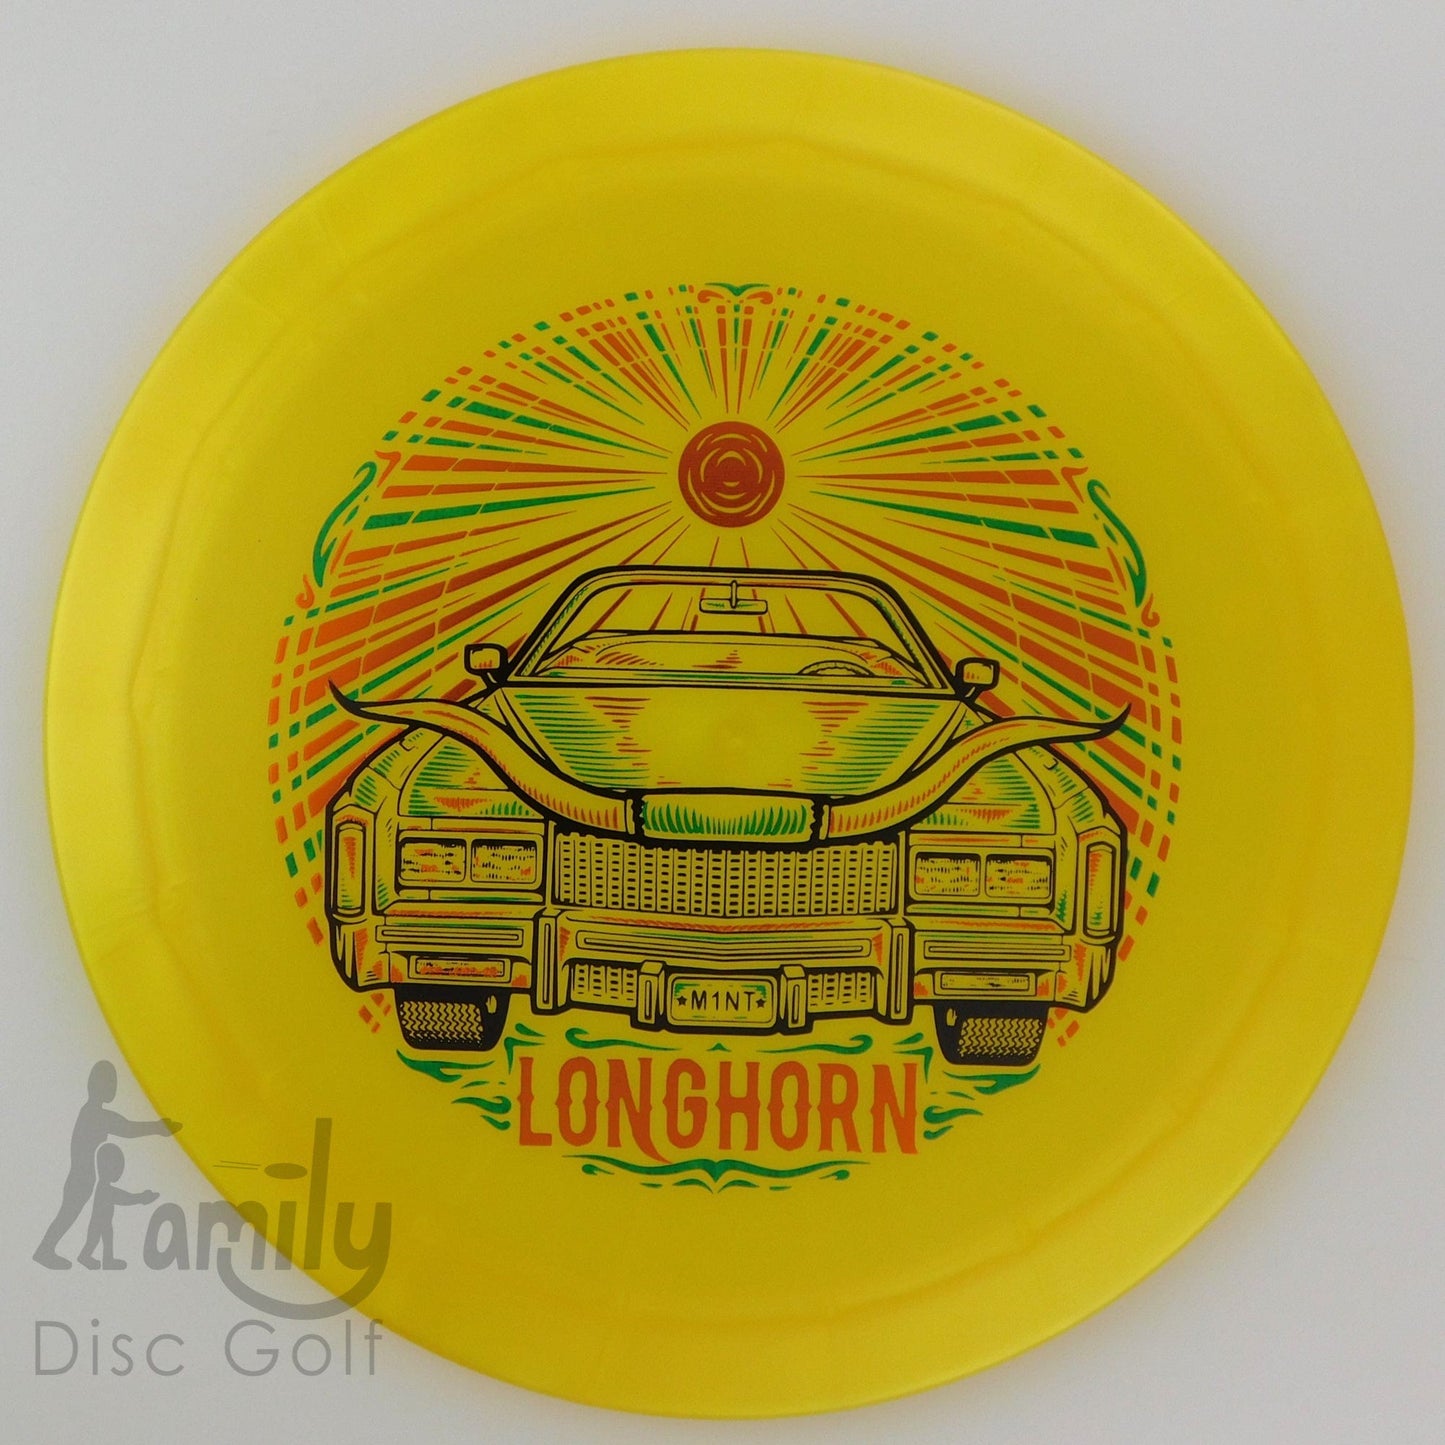 Mint Discs Longhorn - Sublime 11│4│-1│2.5 168.2g - Yellow - Mint Discs Longhorn - Sublime - 101355